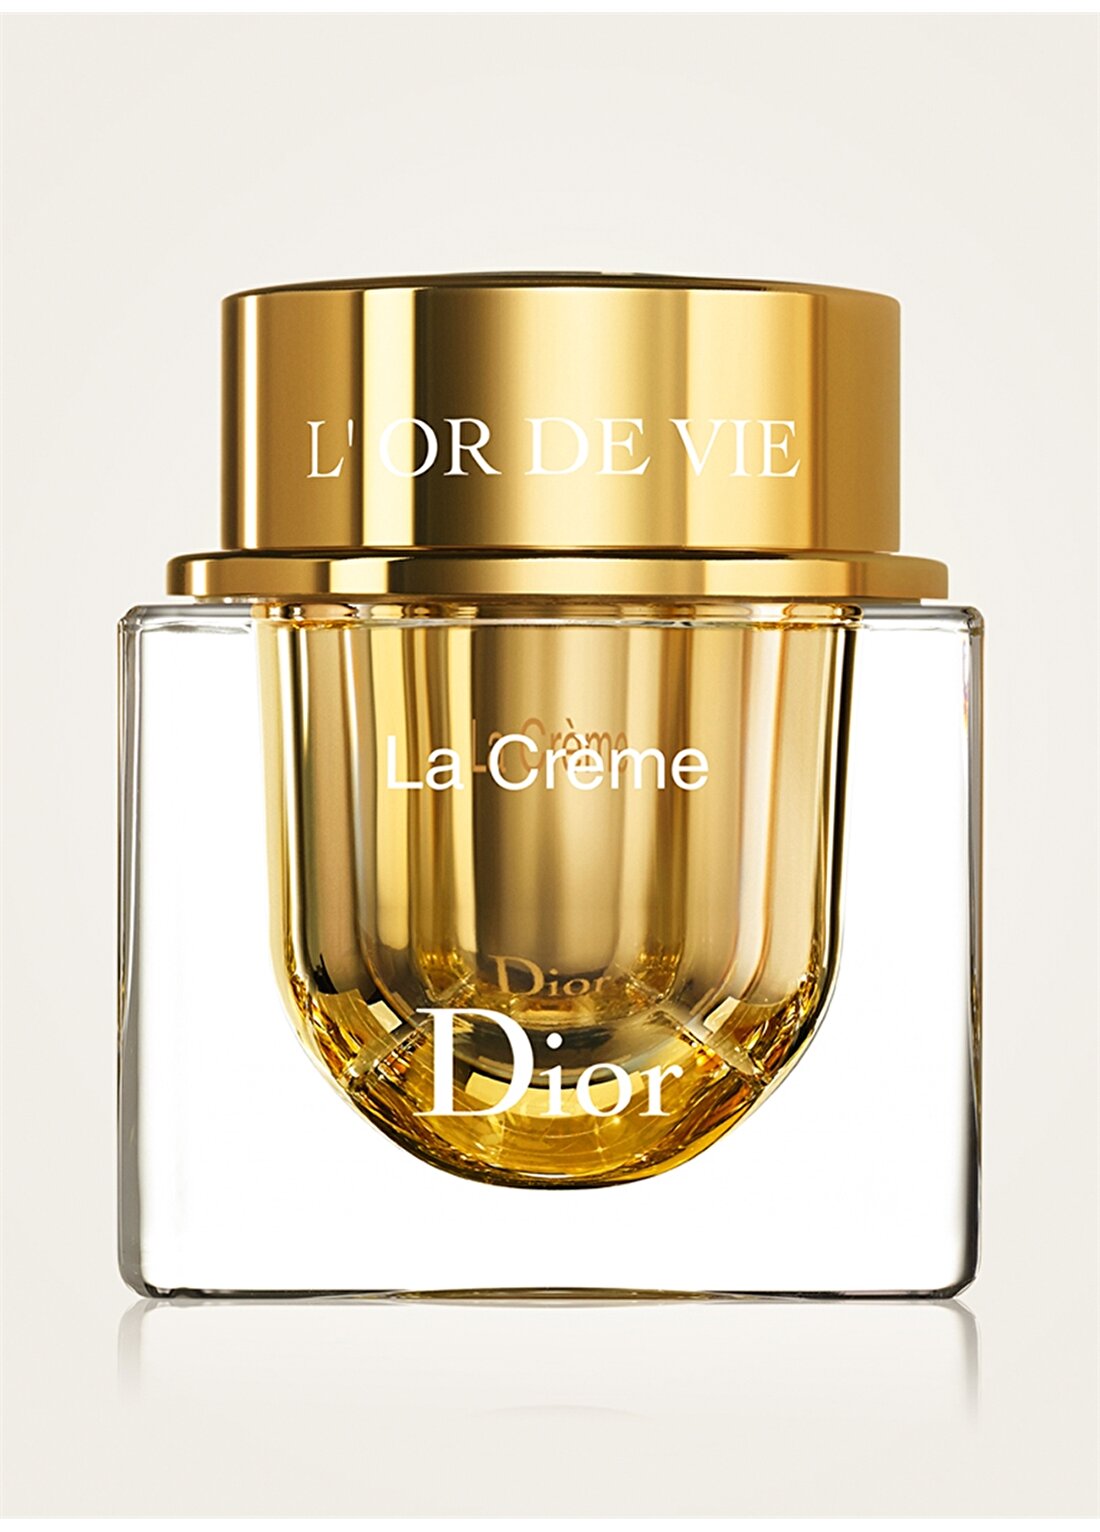 Dior L'or De Vie La Creme The Skincare Masterpiece 50 Ml